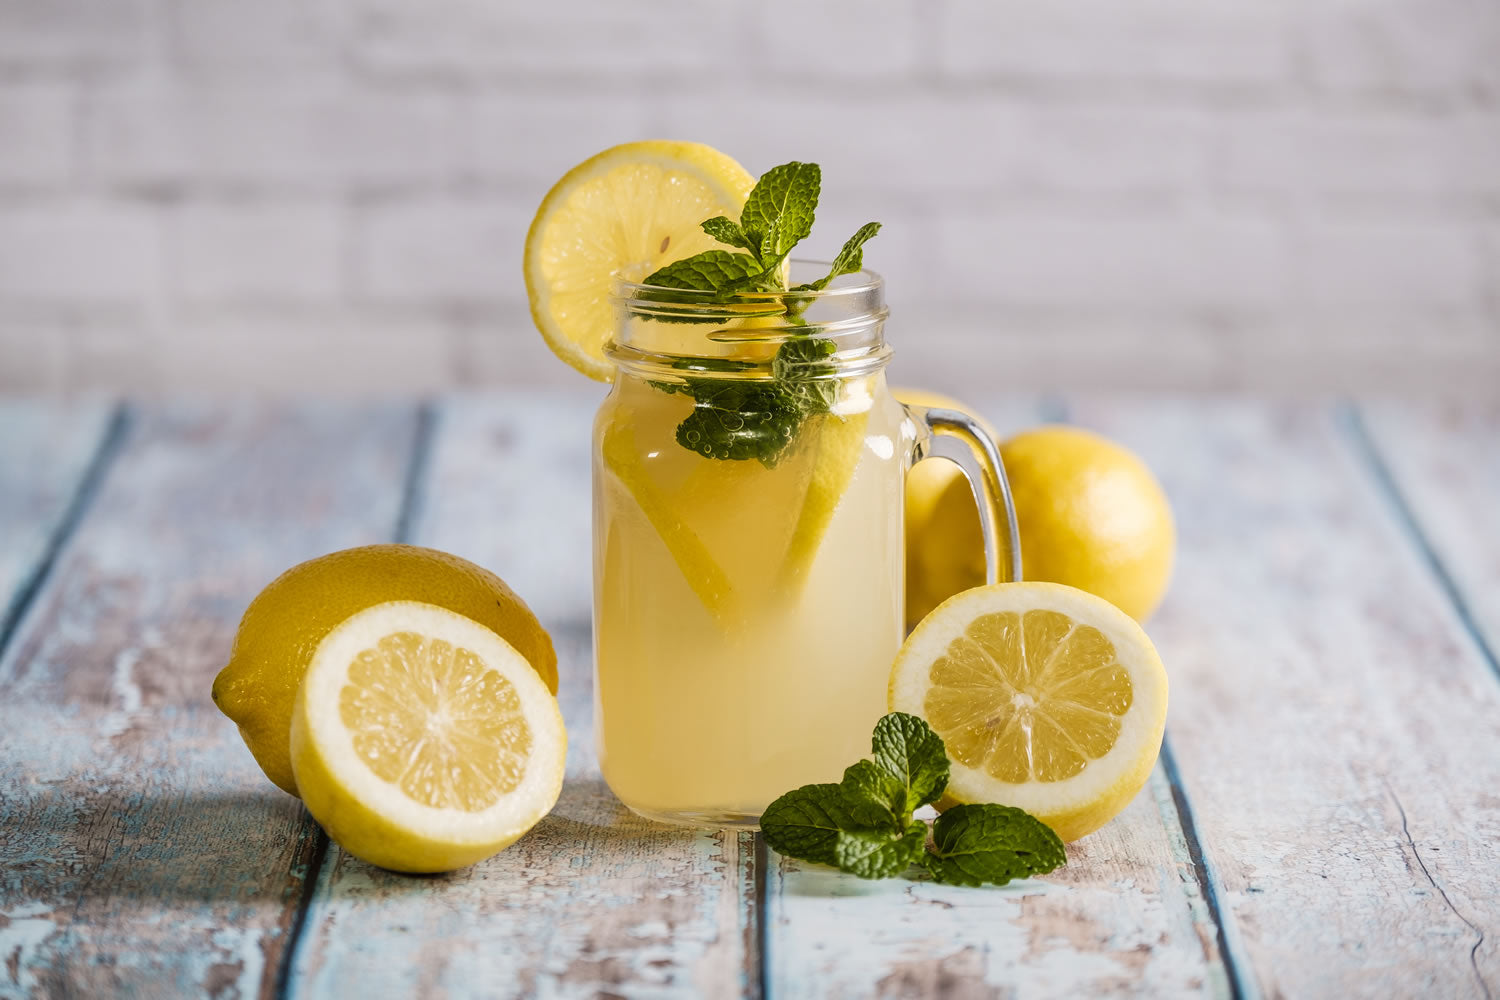 Lemon/Lime Juice